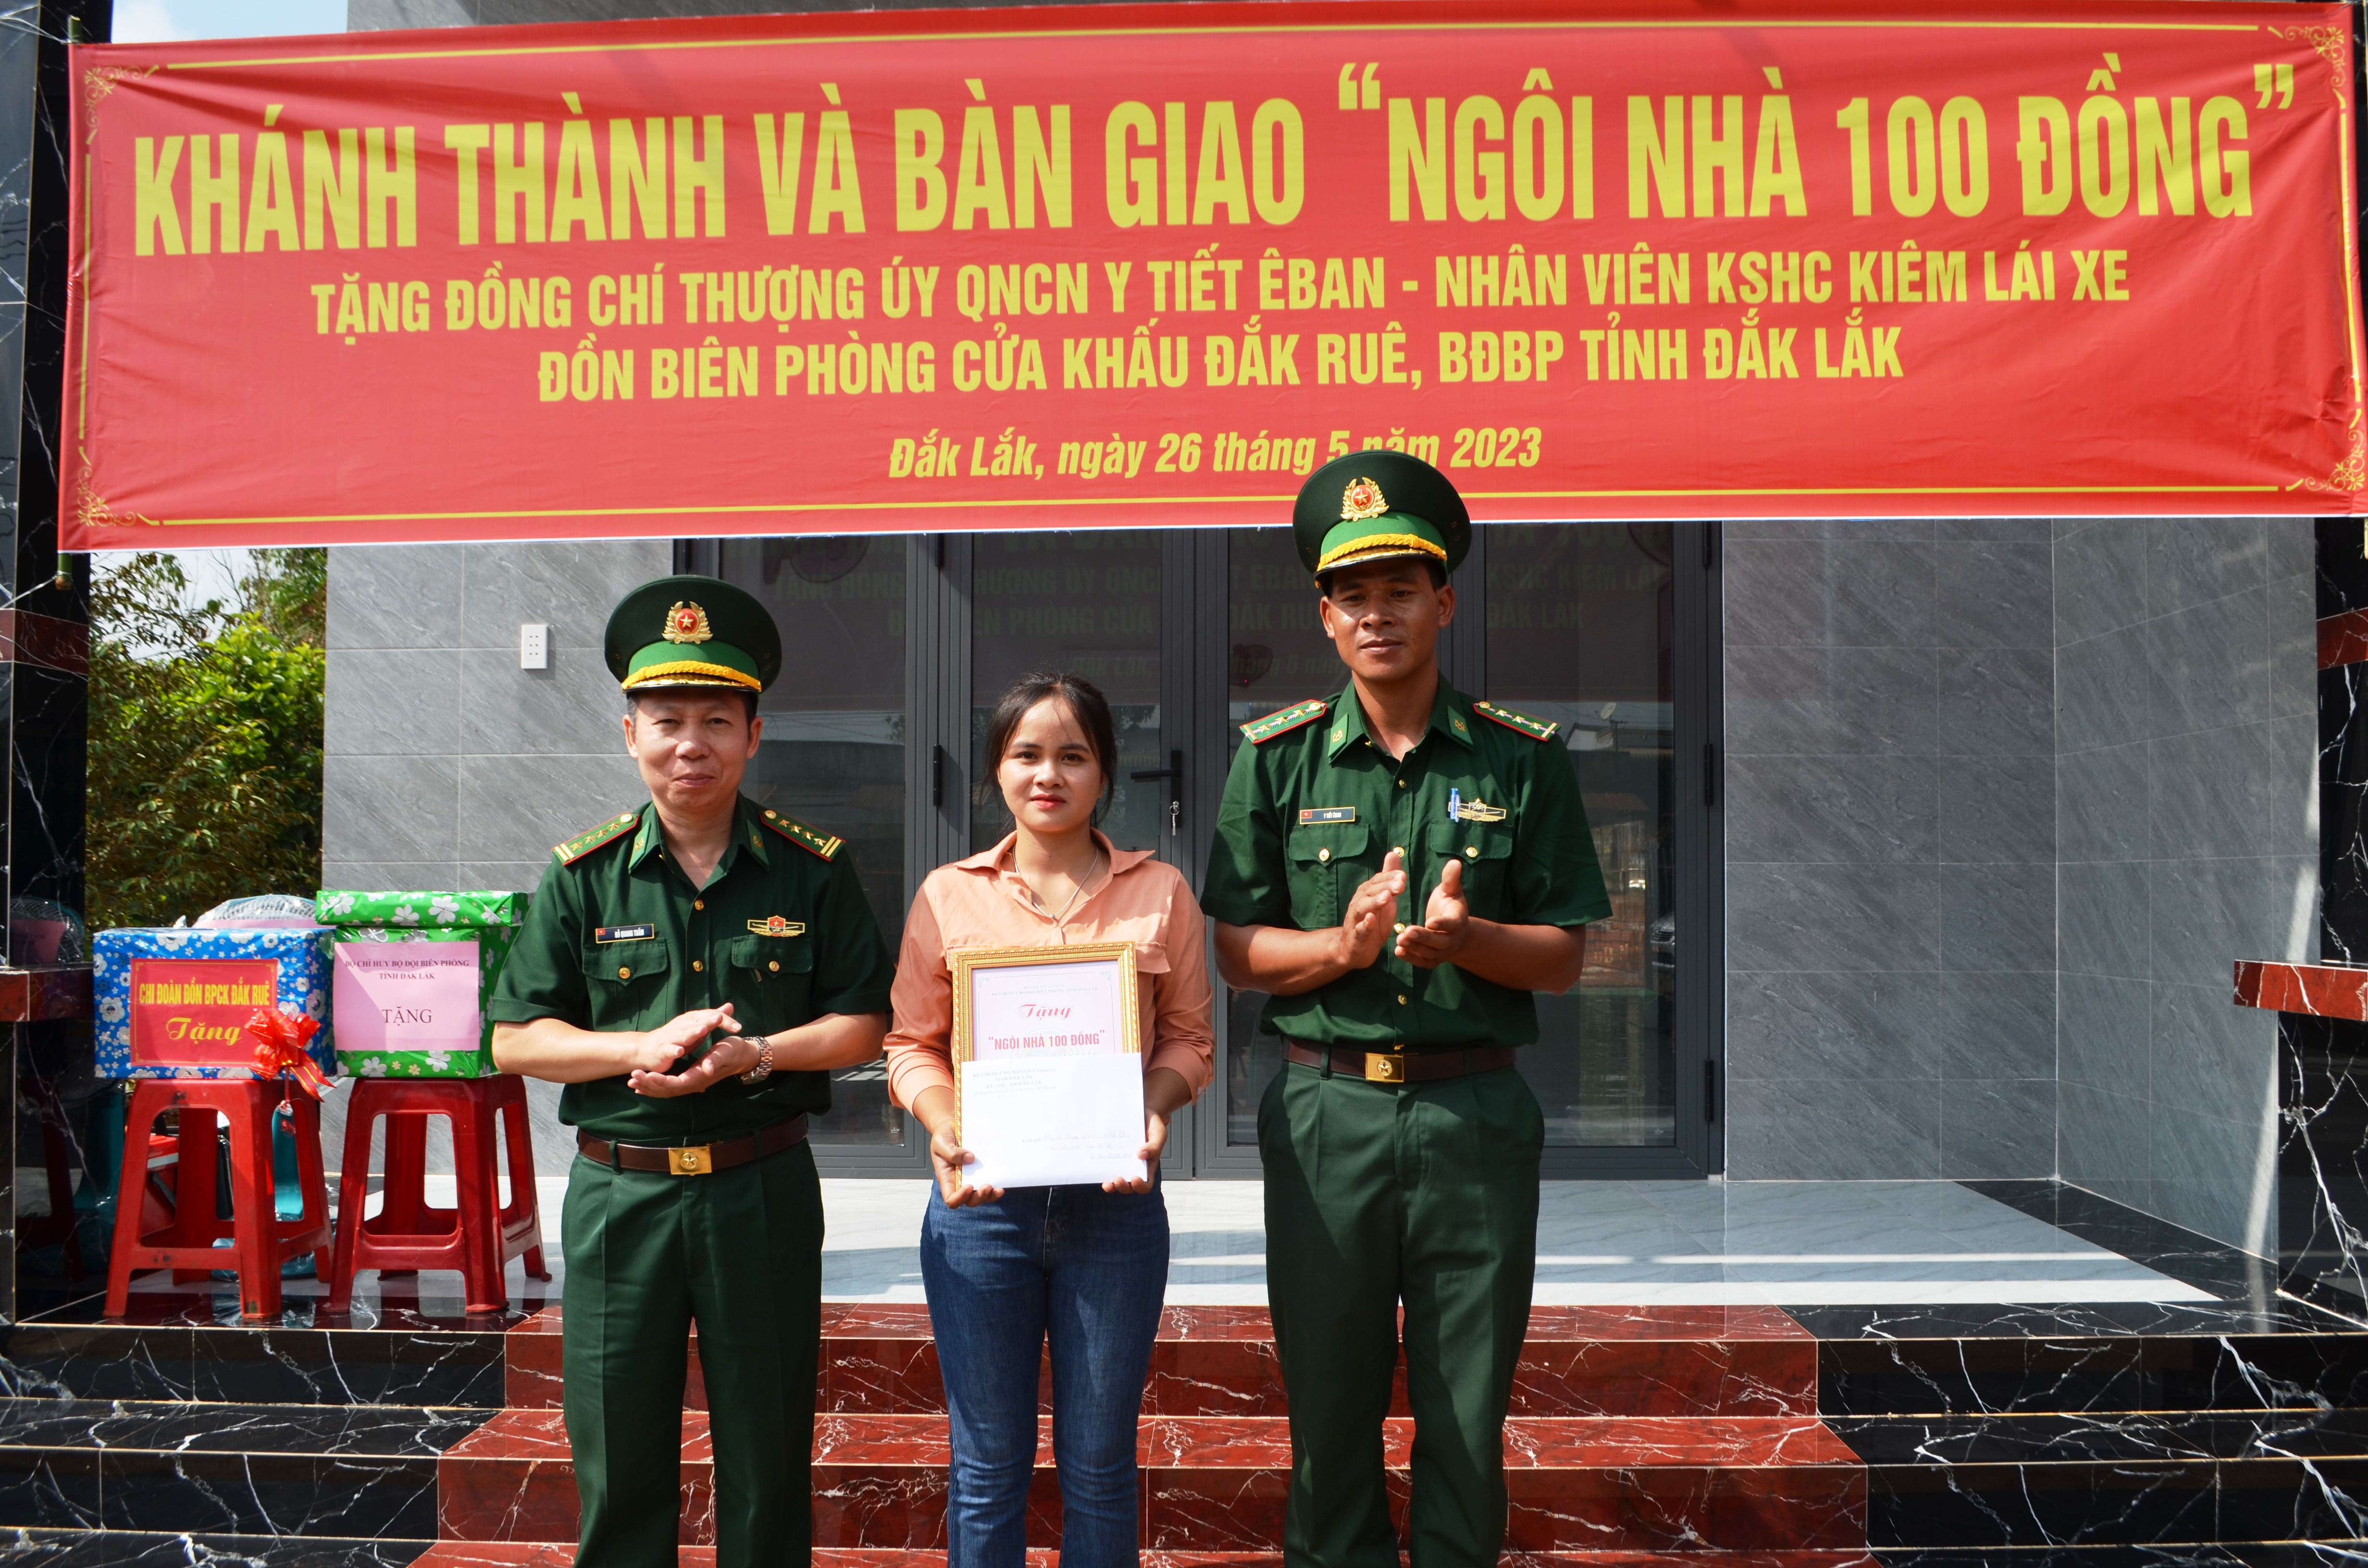 Bộ đội Biên phòng tỉnh Đắk Lắk khánh thành “Ngôi nhà 100 đồng”